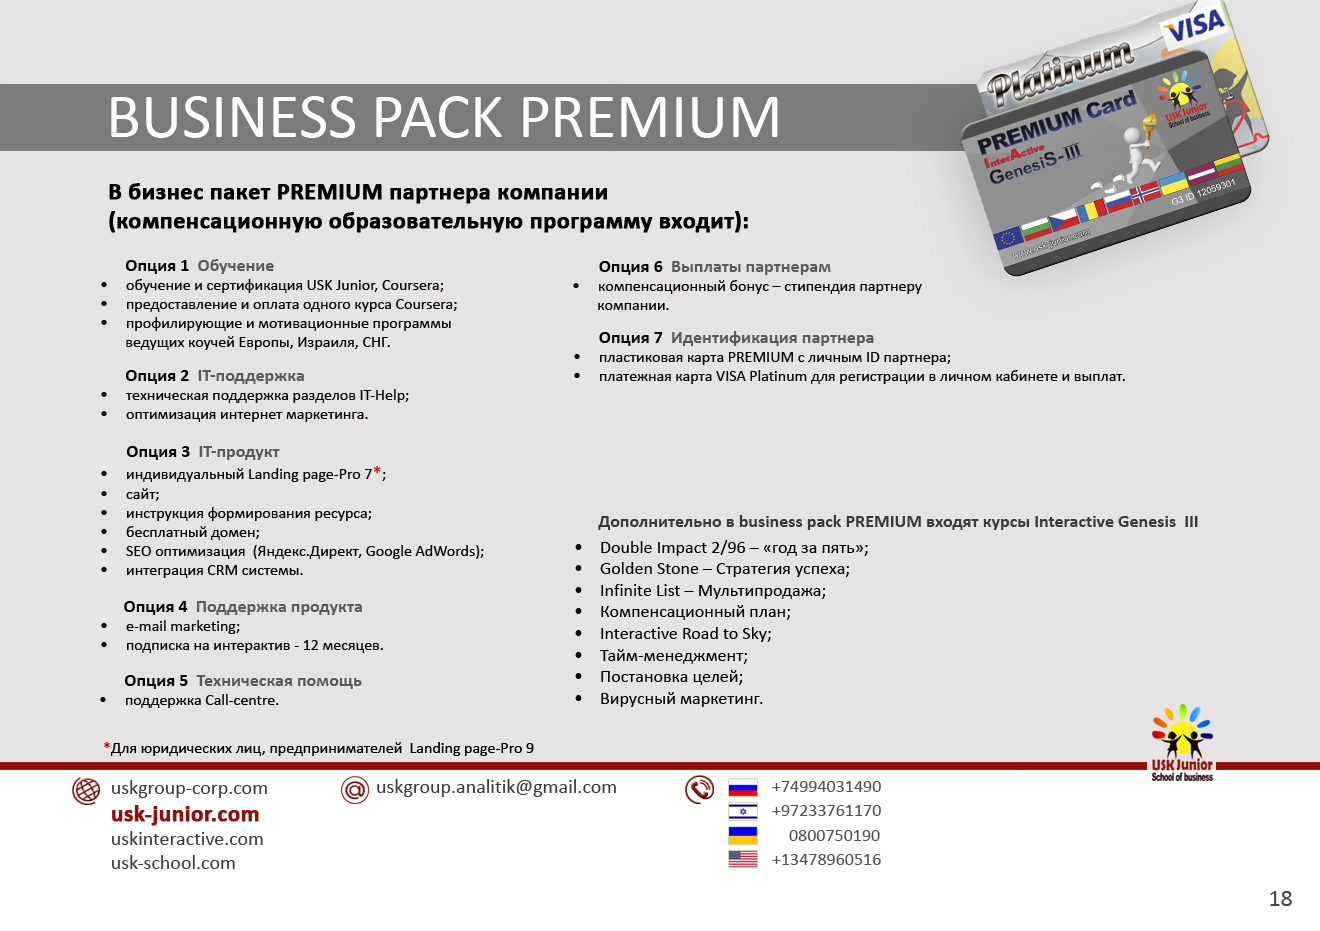 Business pack Premium